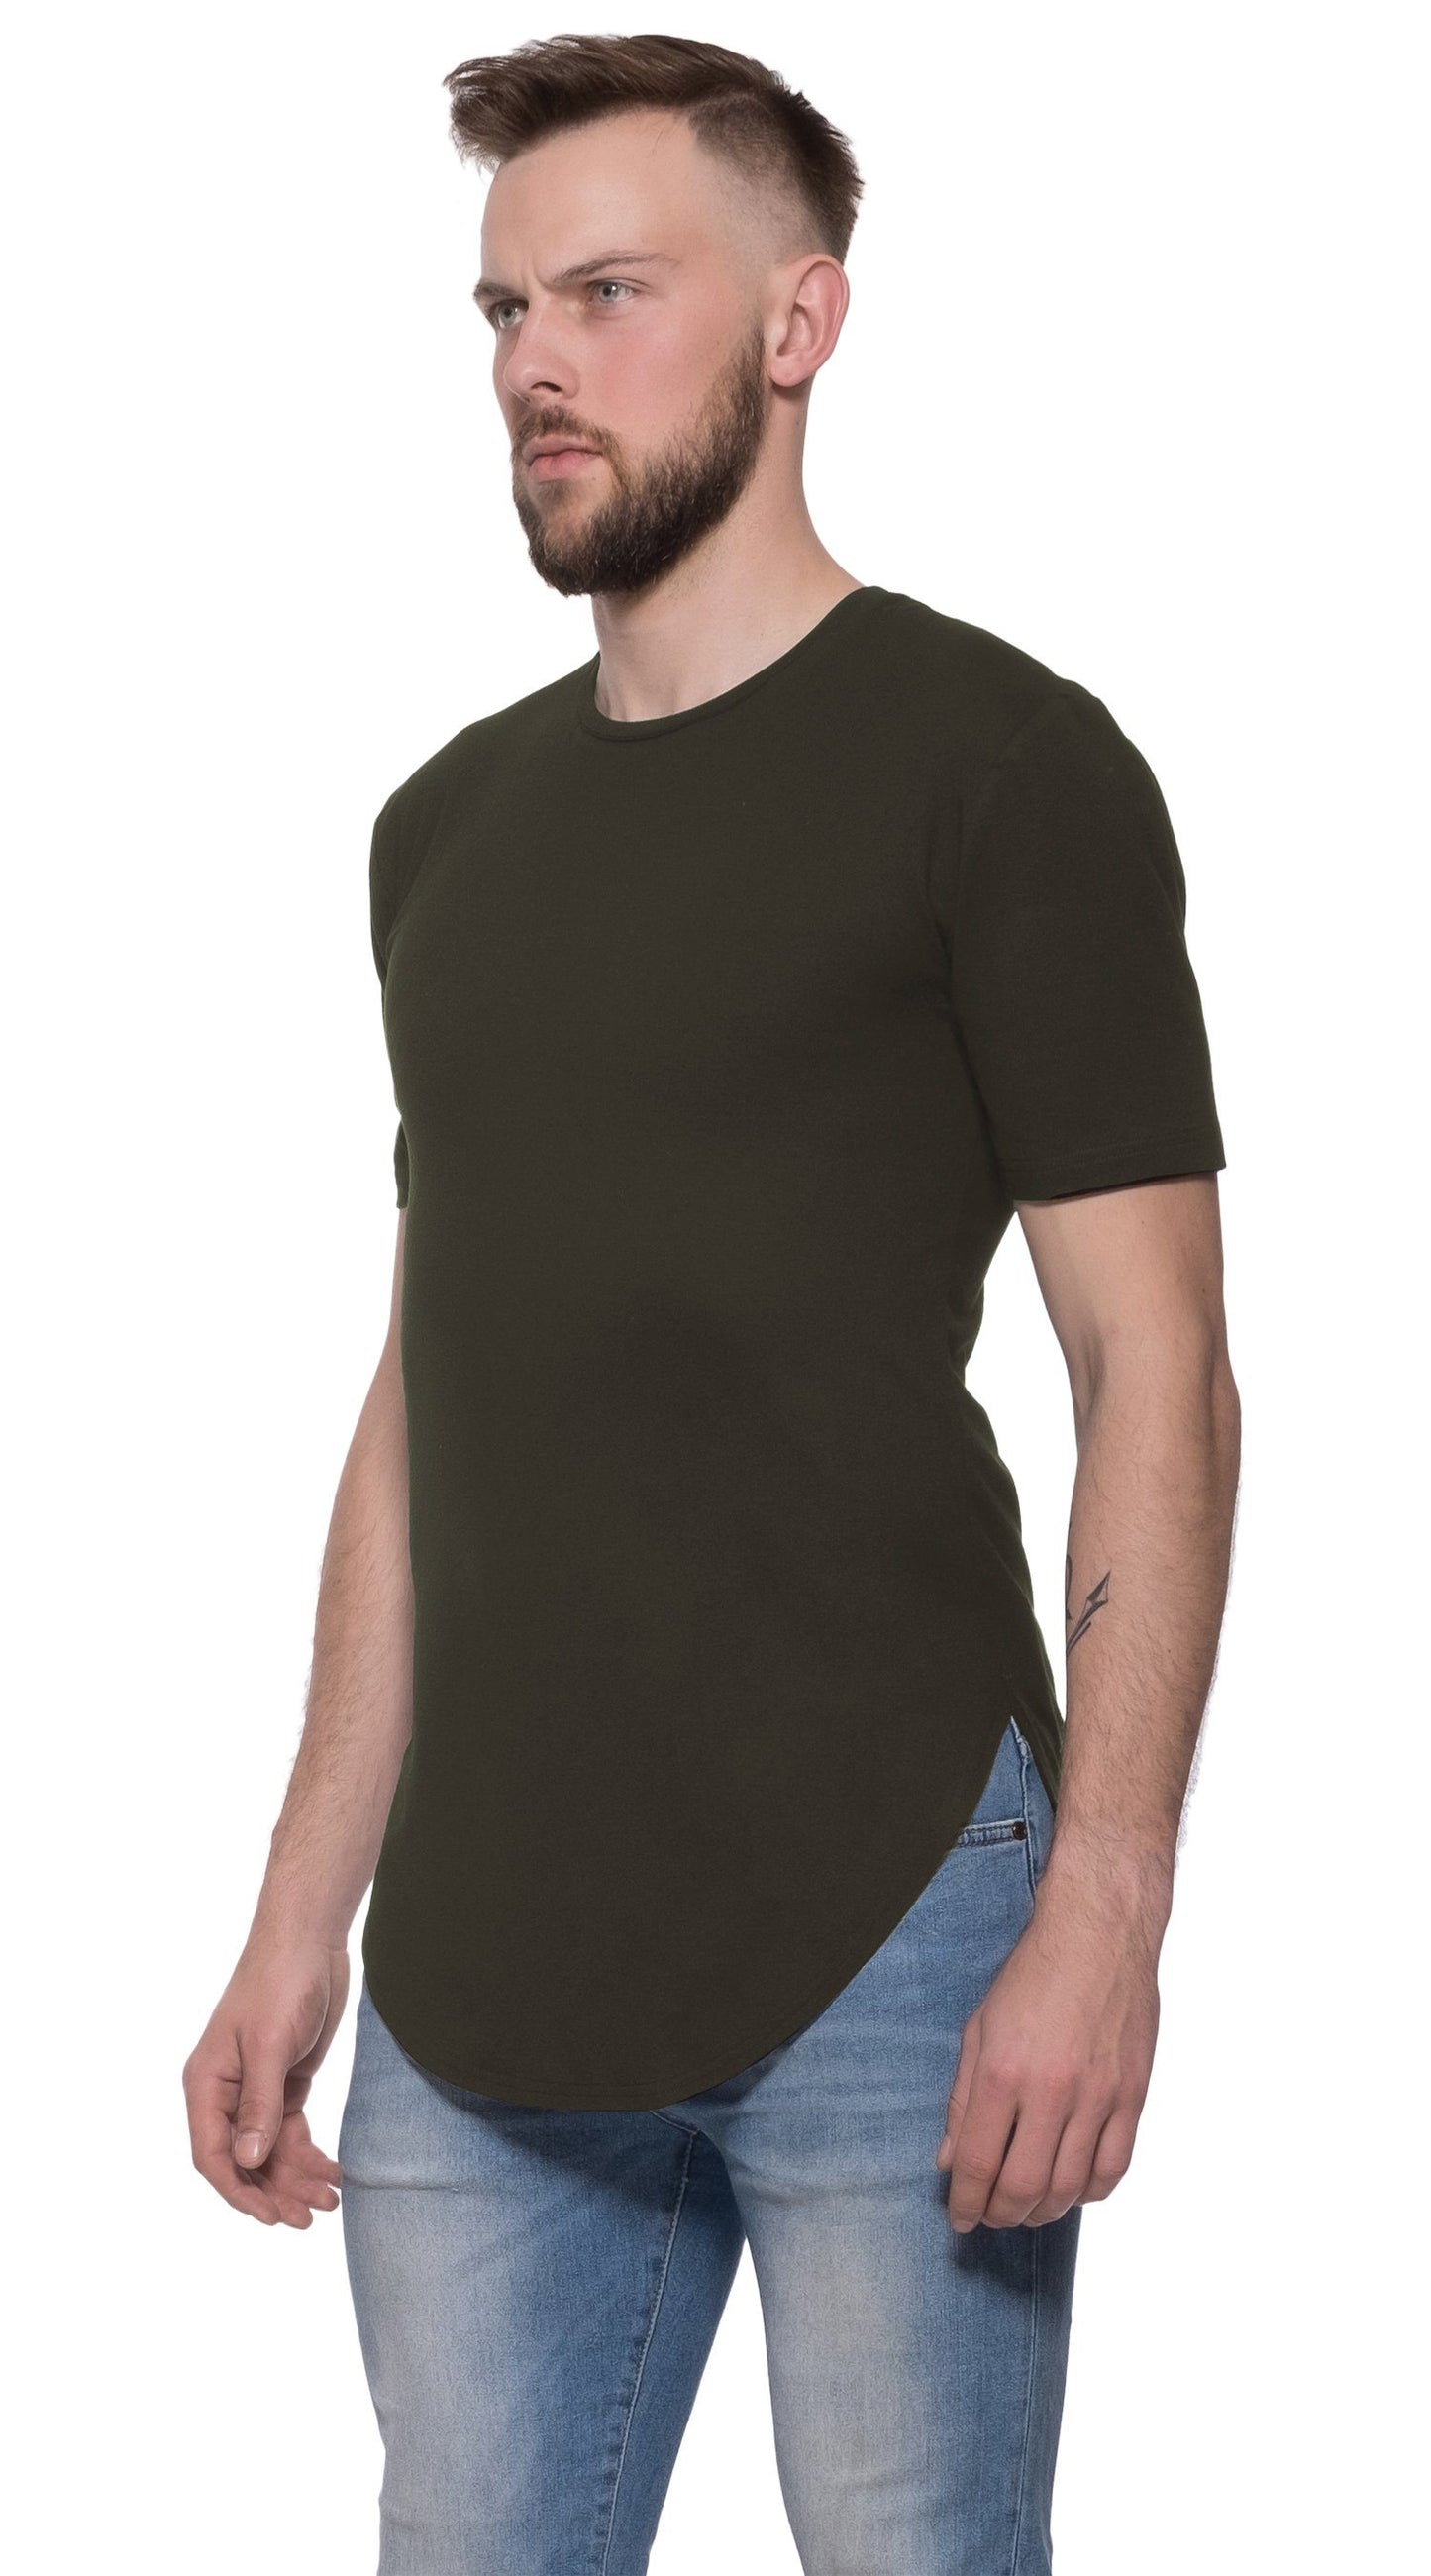 TheG Man viskózové Basic 2/2 dlhé tričko // khaki